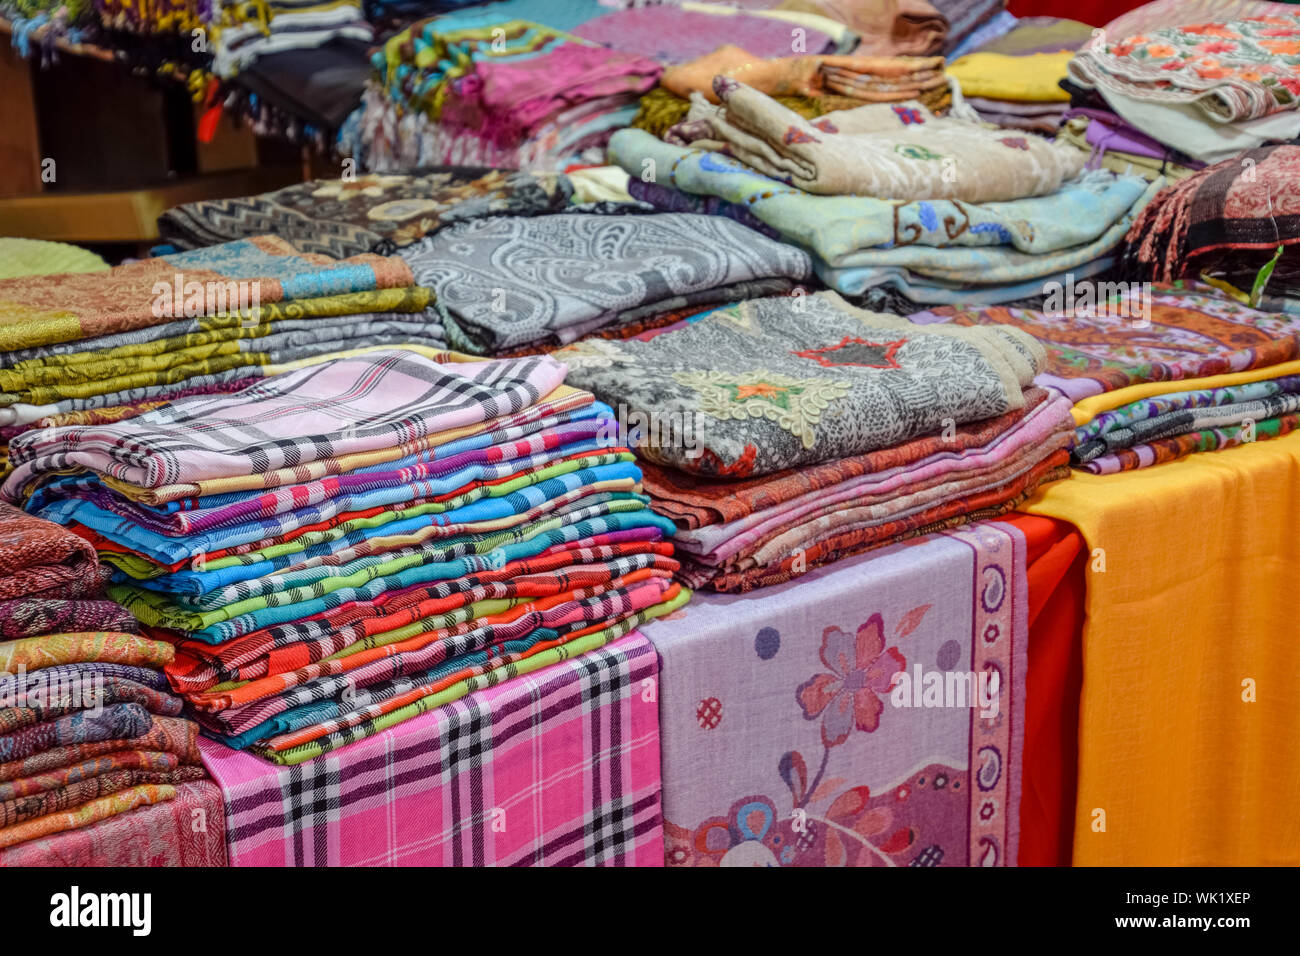 Indische Textilien auf dem Markt, Stoffe, Bettwäsche und Kleidung aus Indien  und im indischen Stil Stockfotografie - Alamy